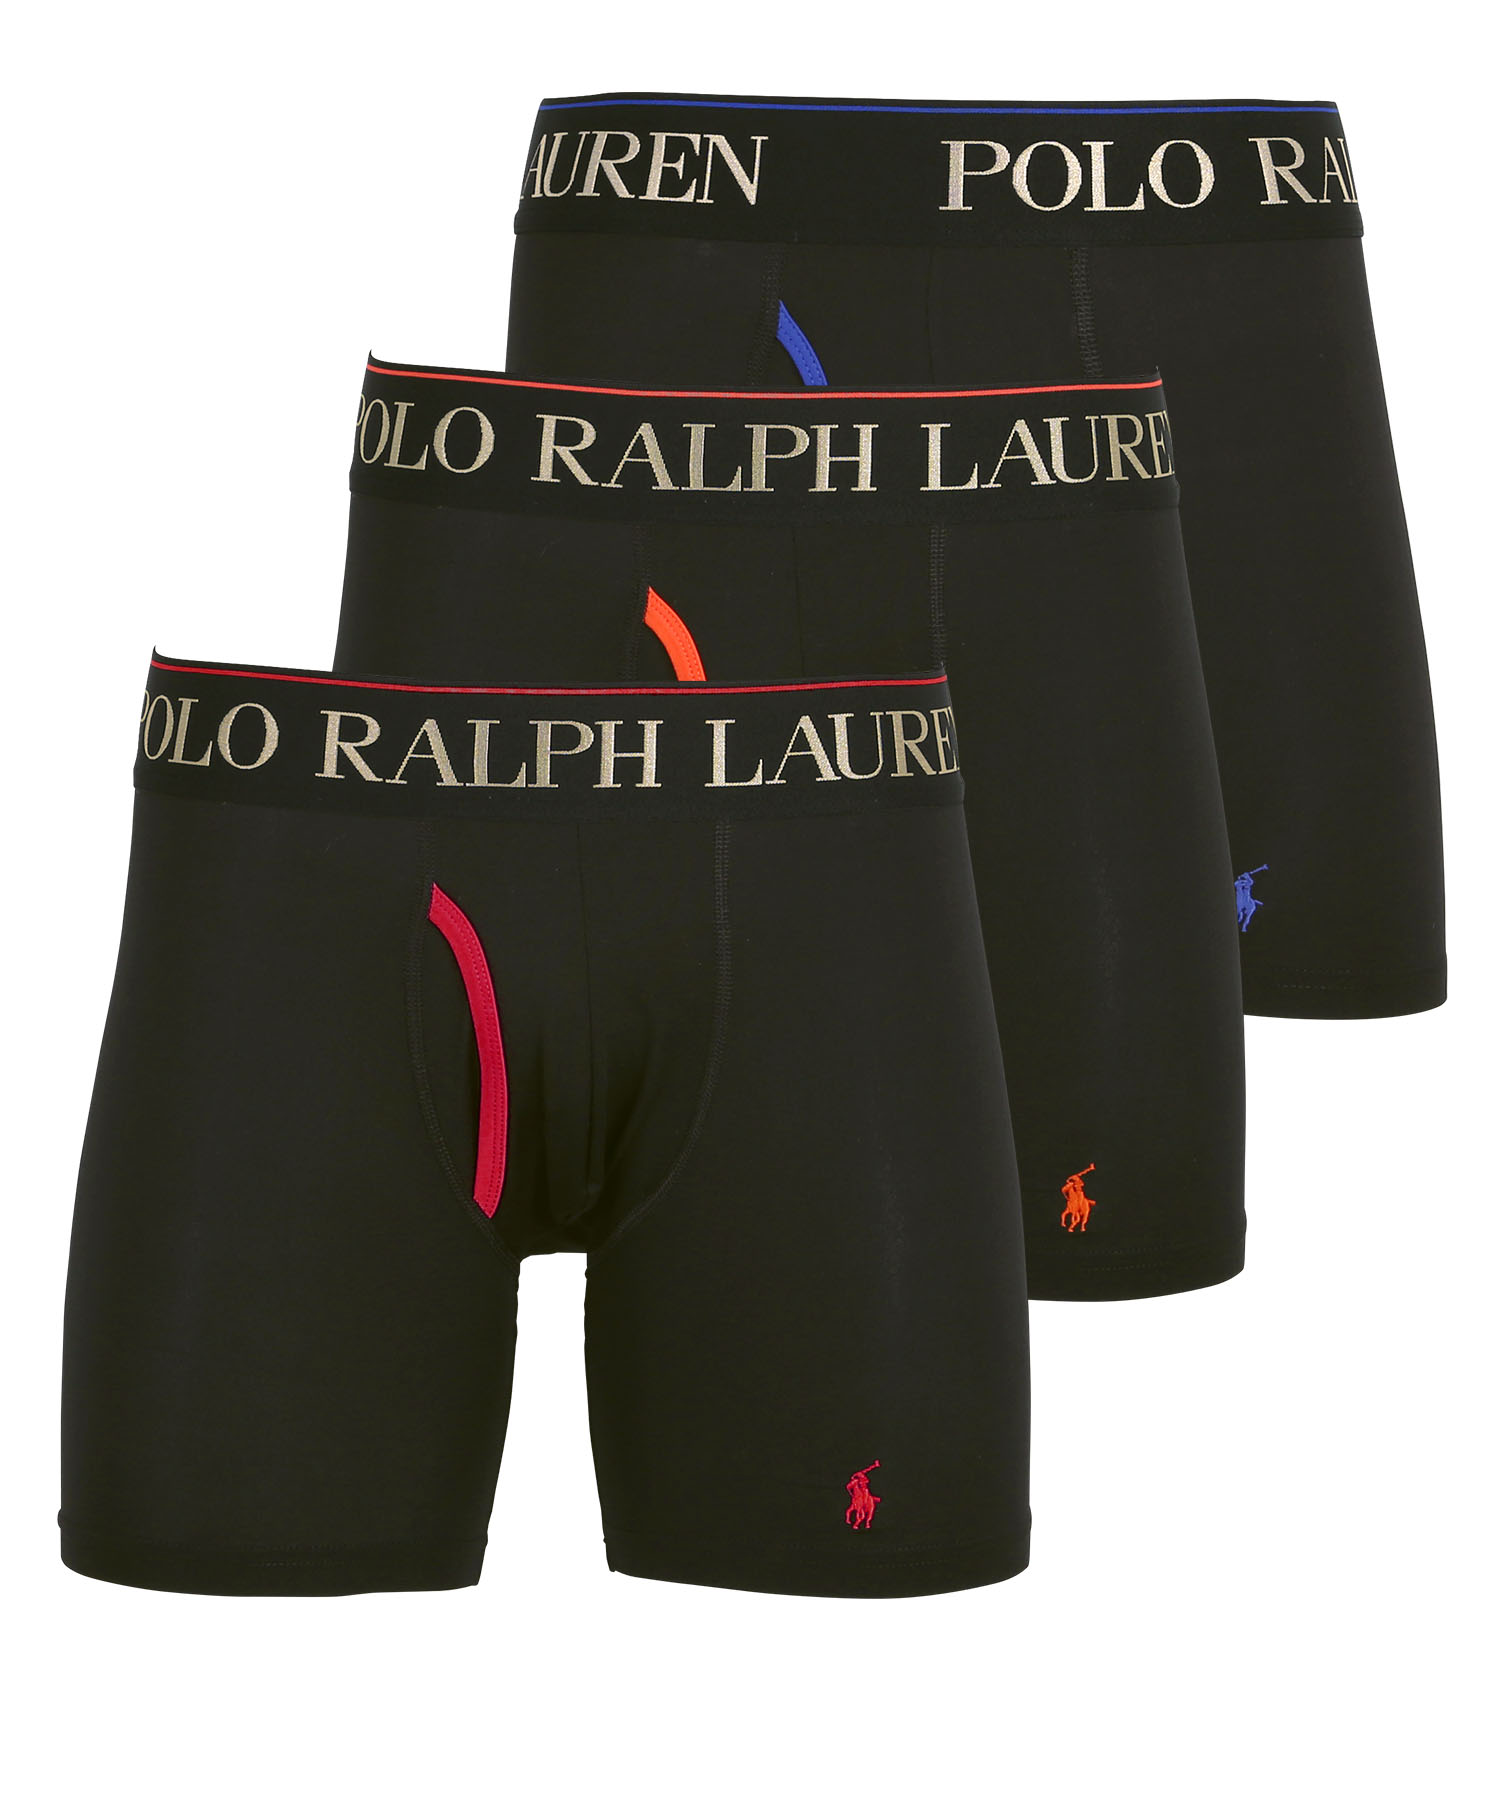 ポロ ラルフローレン POLO RALPH LAUREN ロングボクサーパンツ 3枚セット メンズ ...